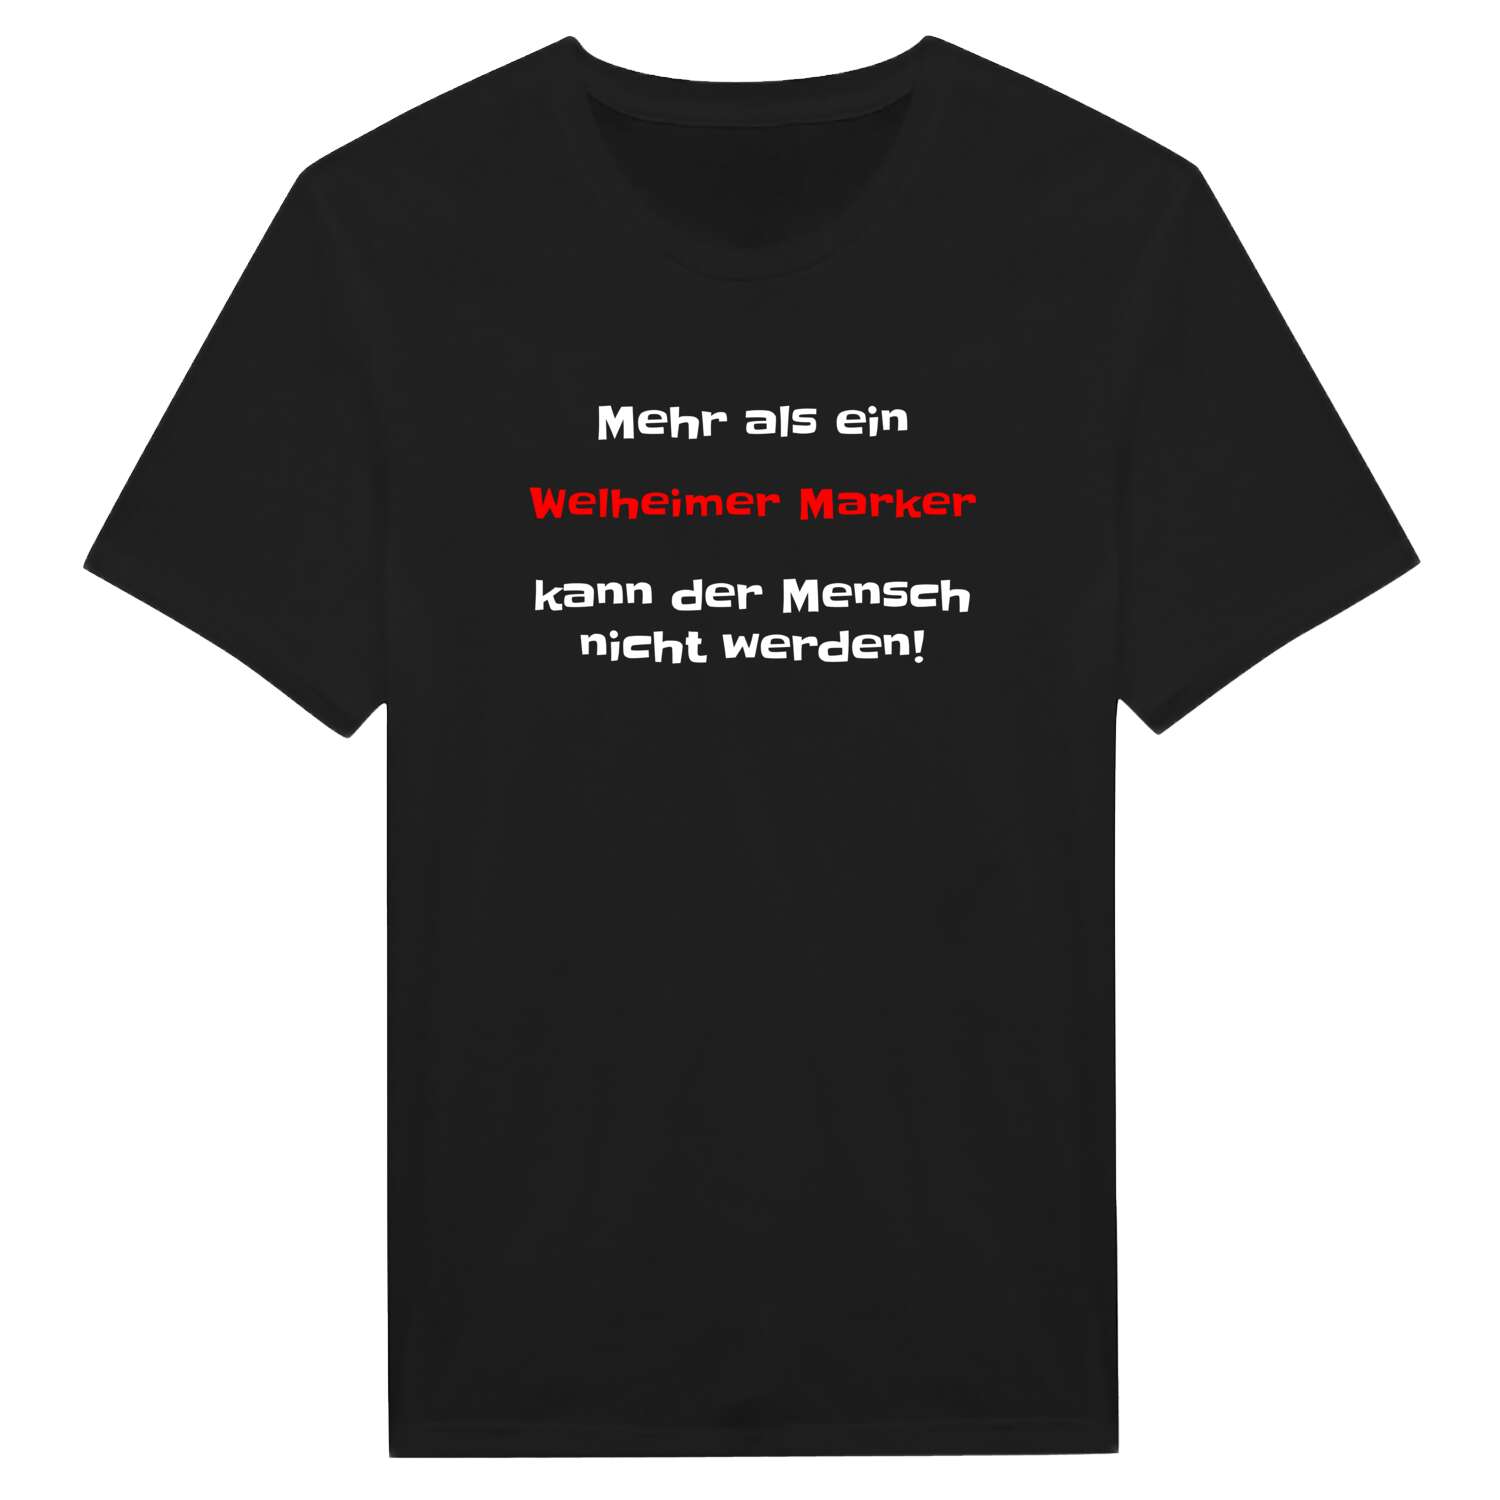 Welheimer Mark T-Shirt »Mehr als ein«